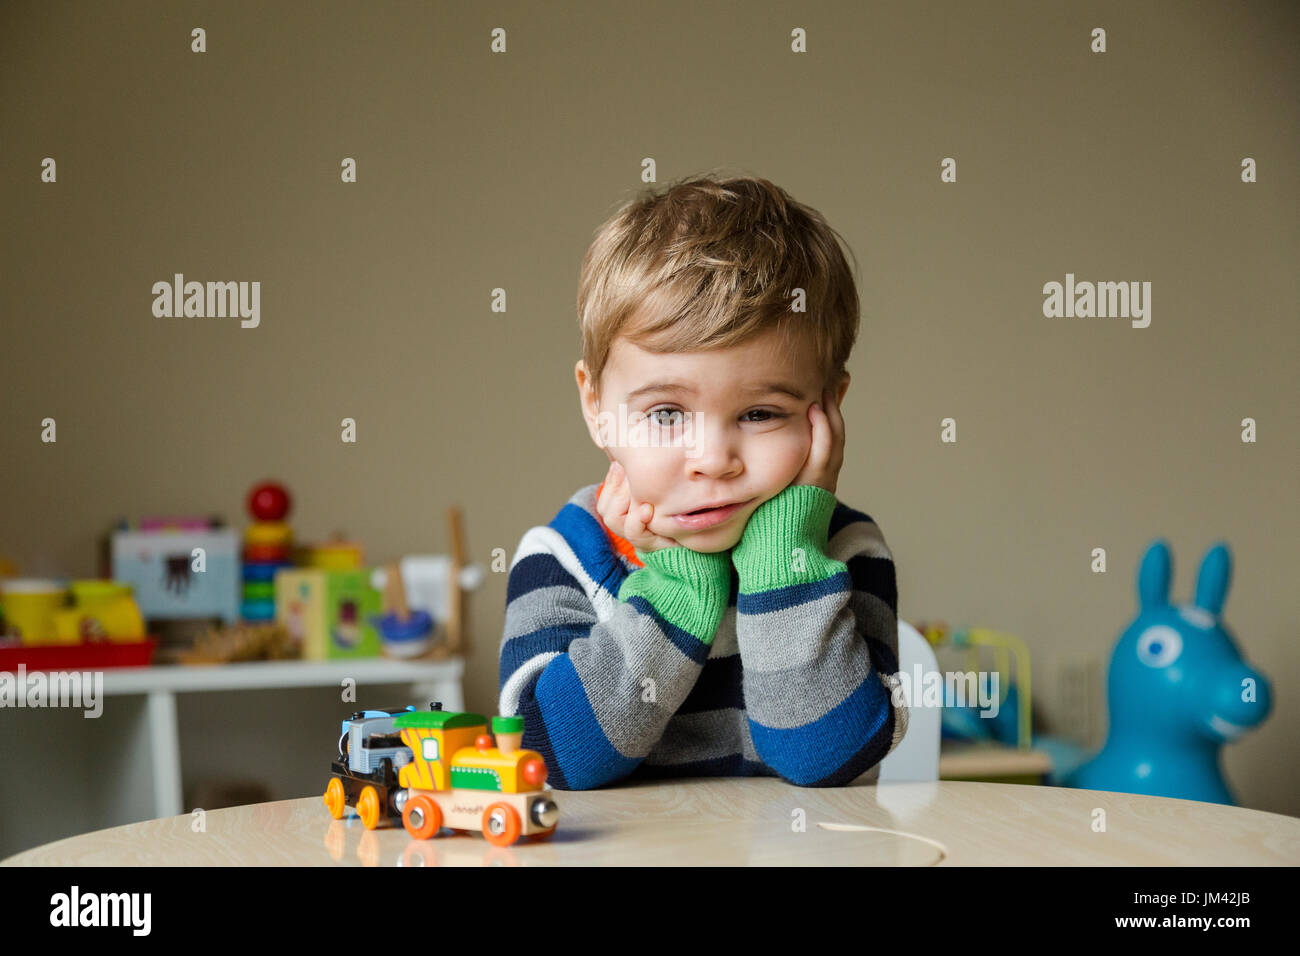 Un niño niño sentado en su sala de juegos se apoya en sus codos sobre una mesa y squishes sus mejillas con una mirada de tristeza en su rostro. Foto de stock